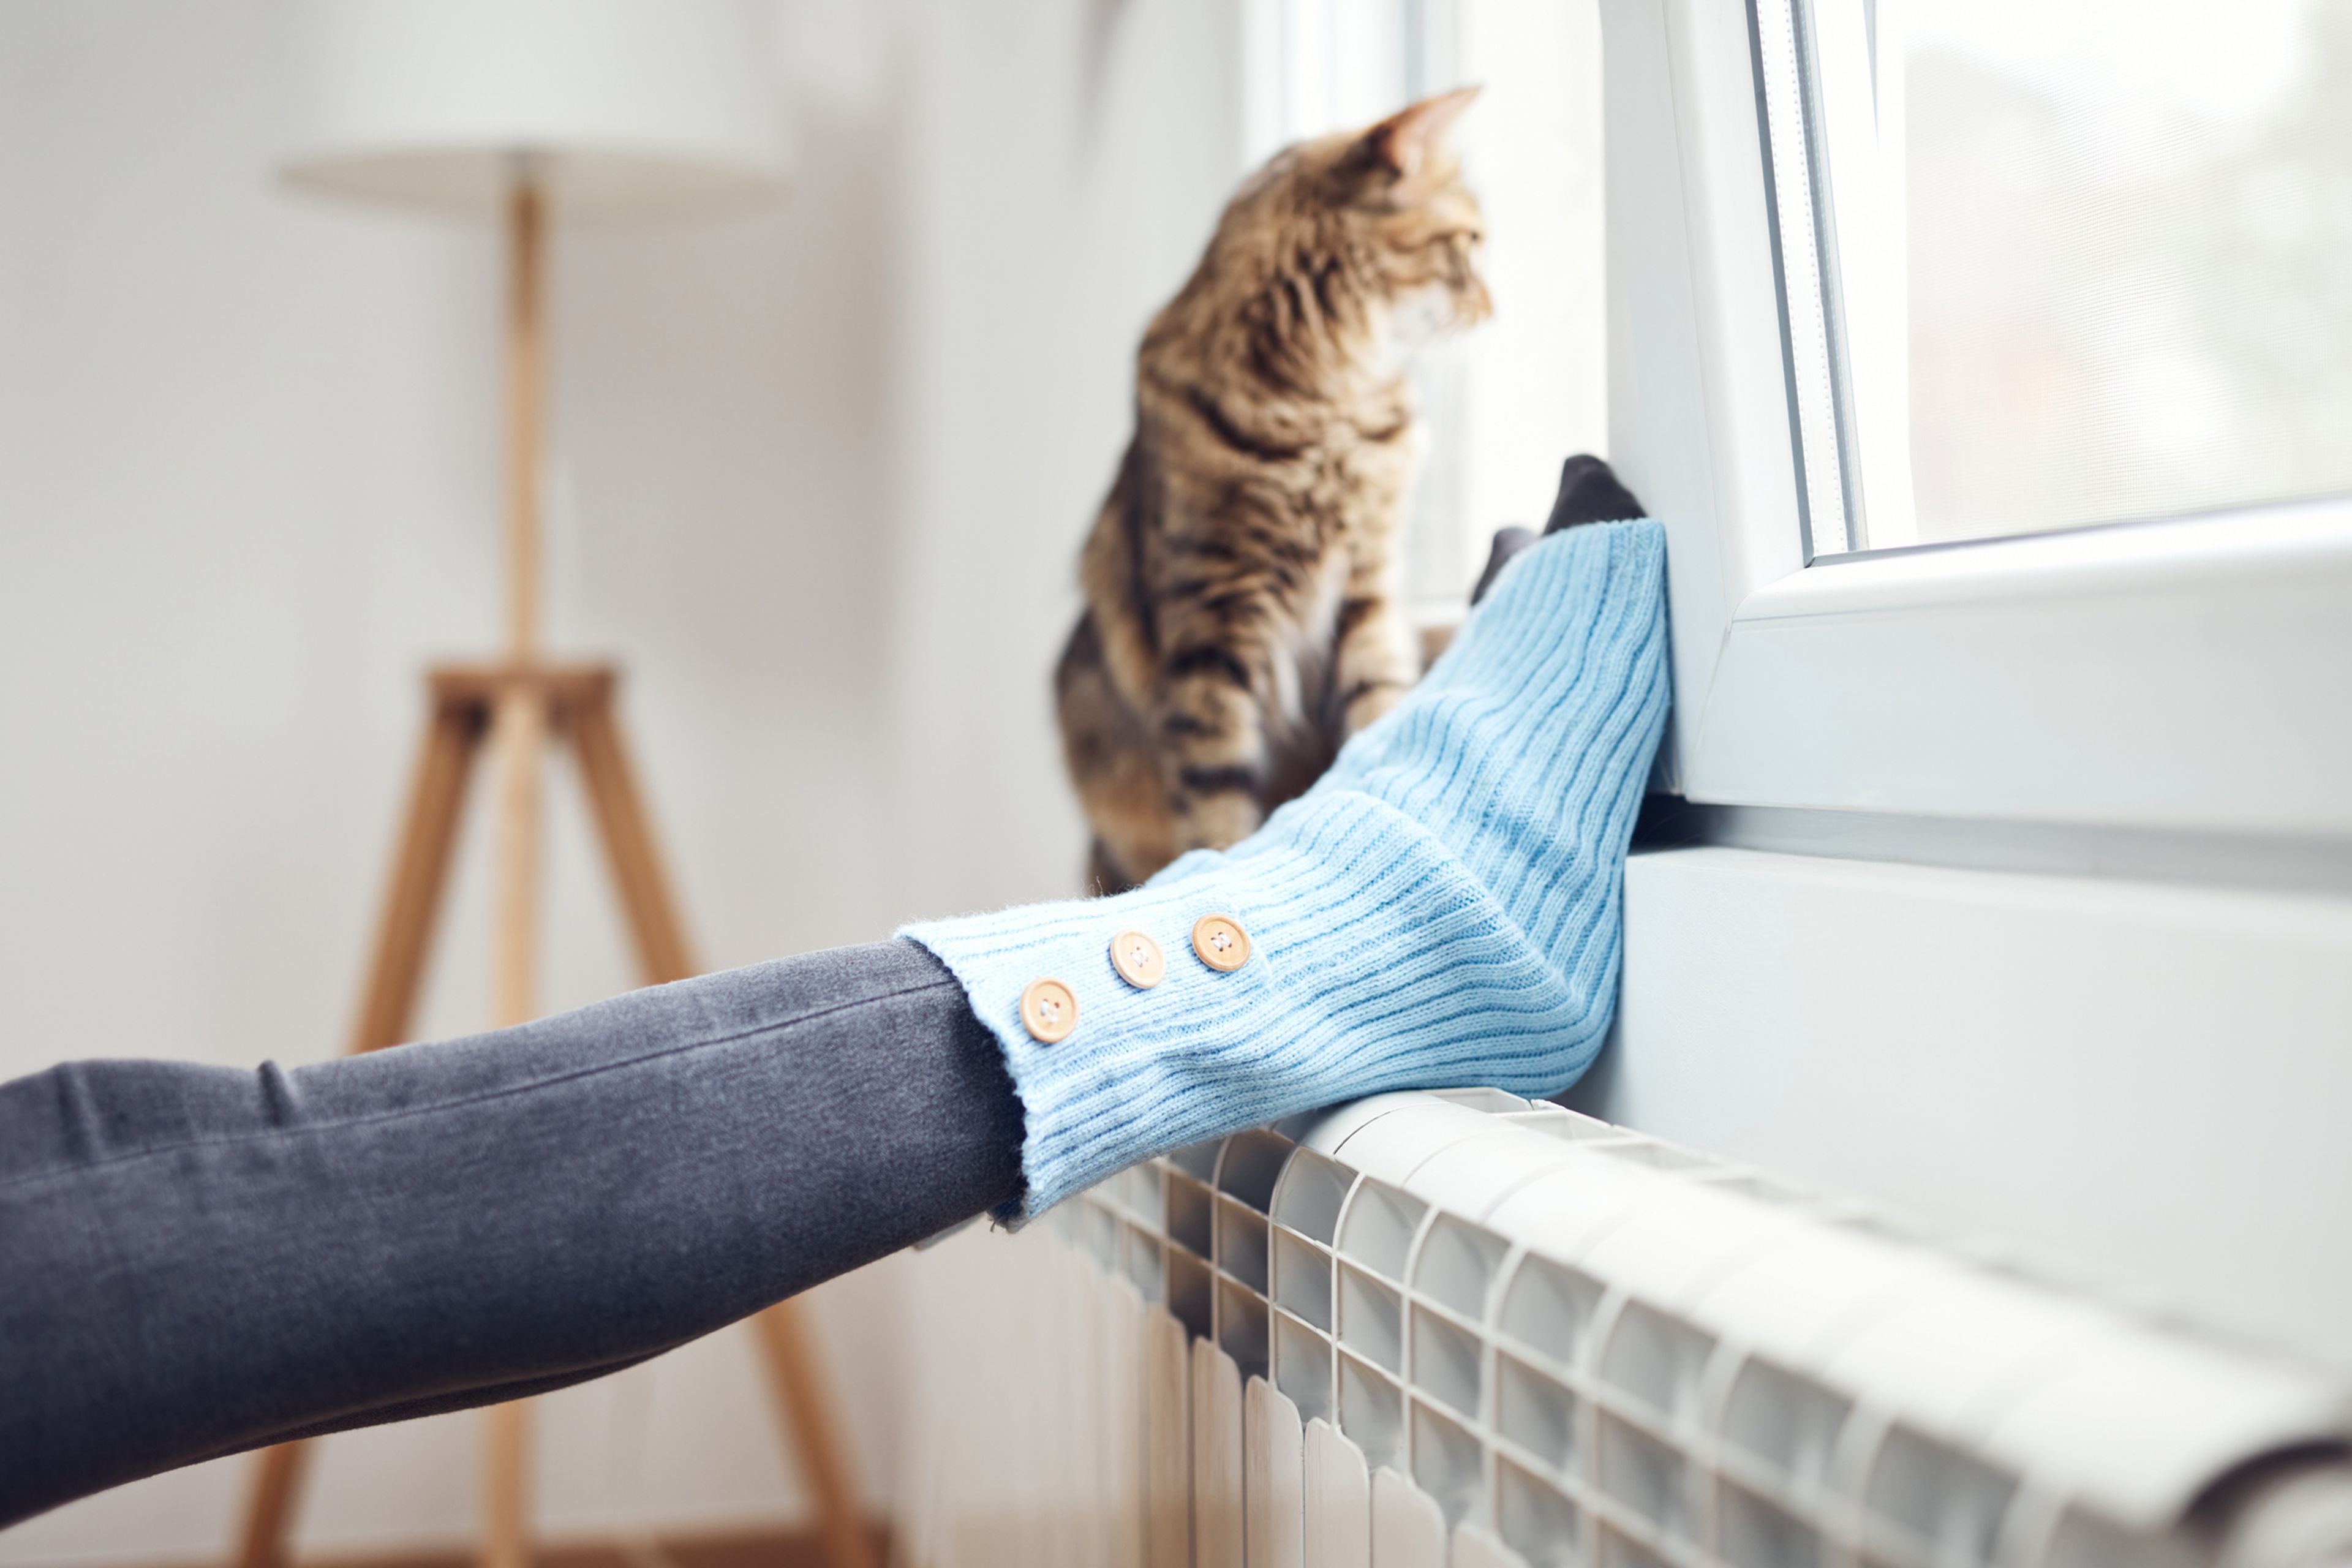 Una persona pone los pies encima del radiador con un gato al lado.